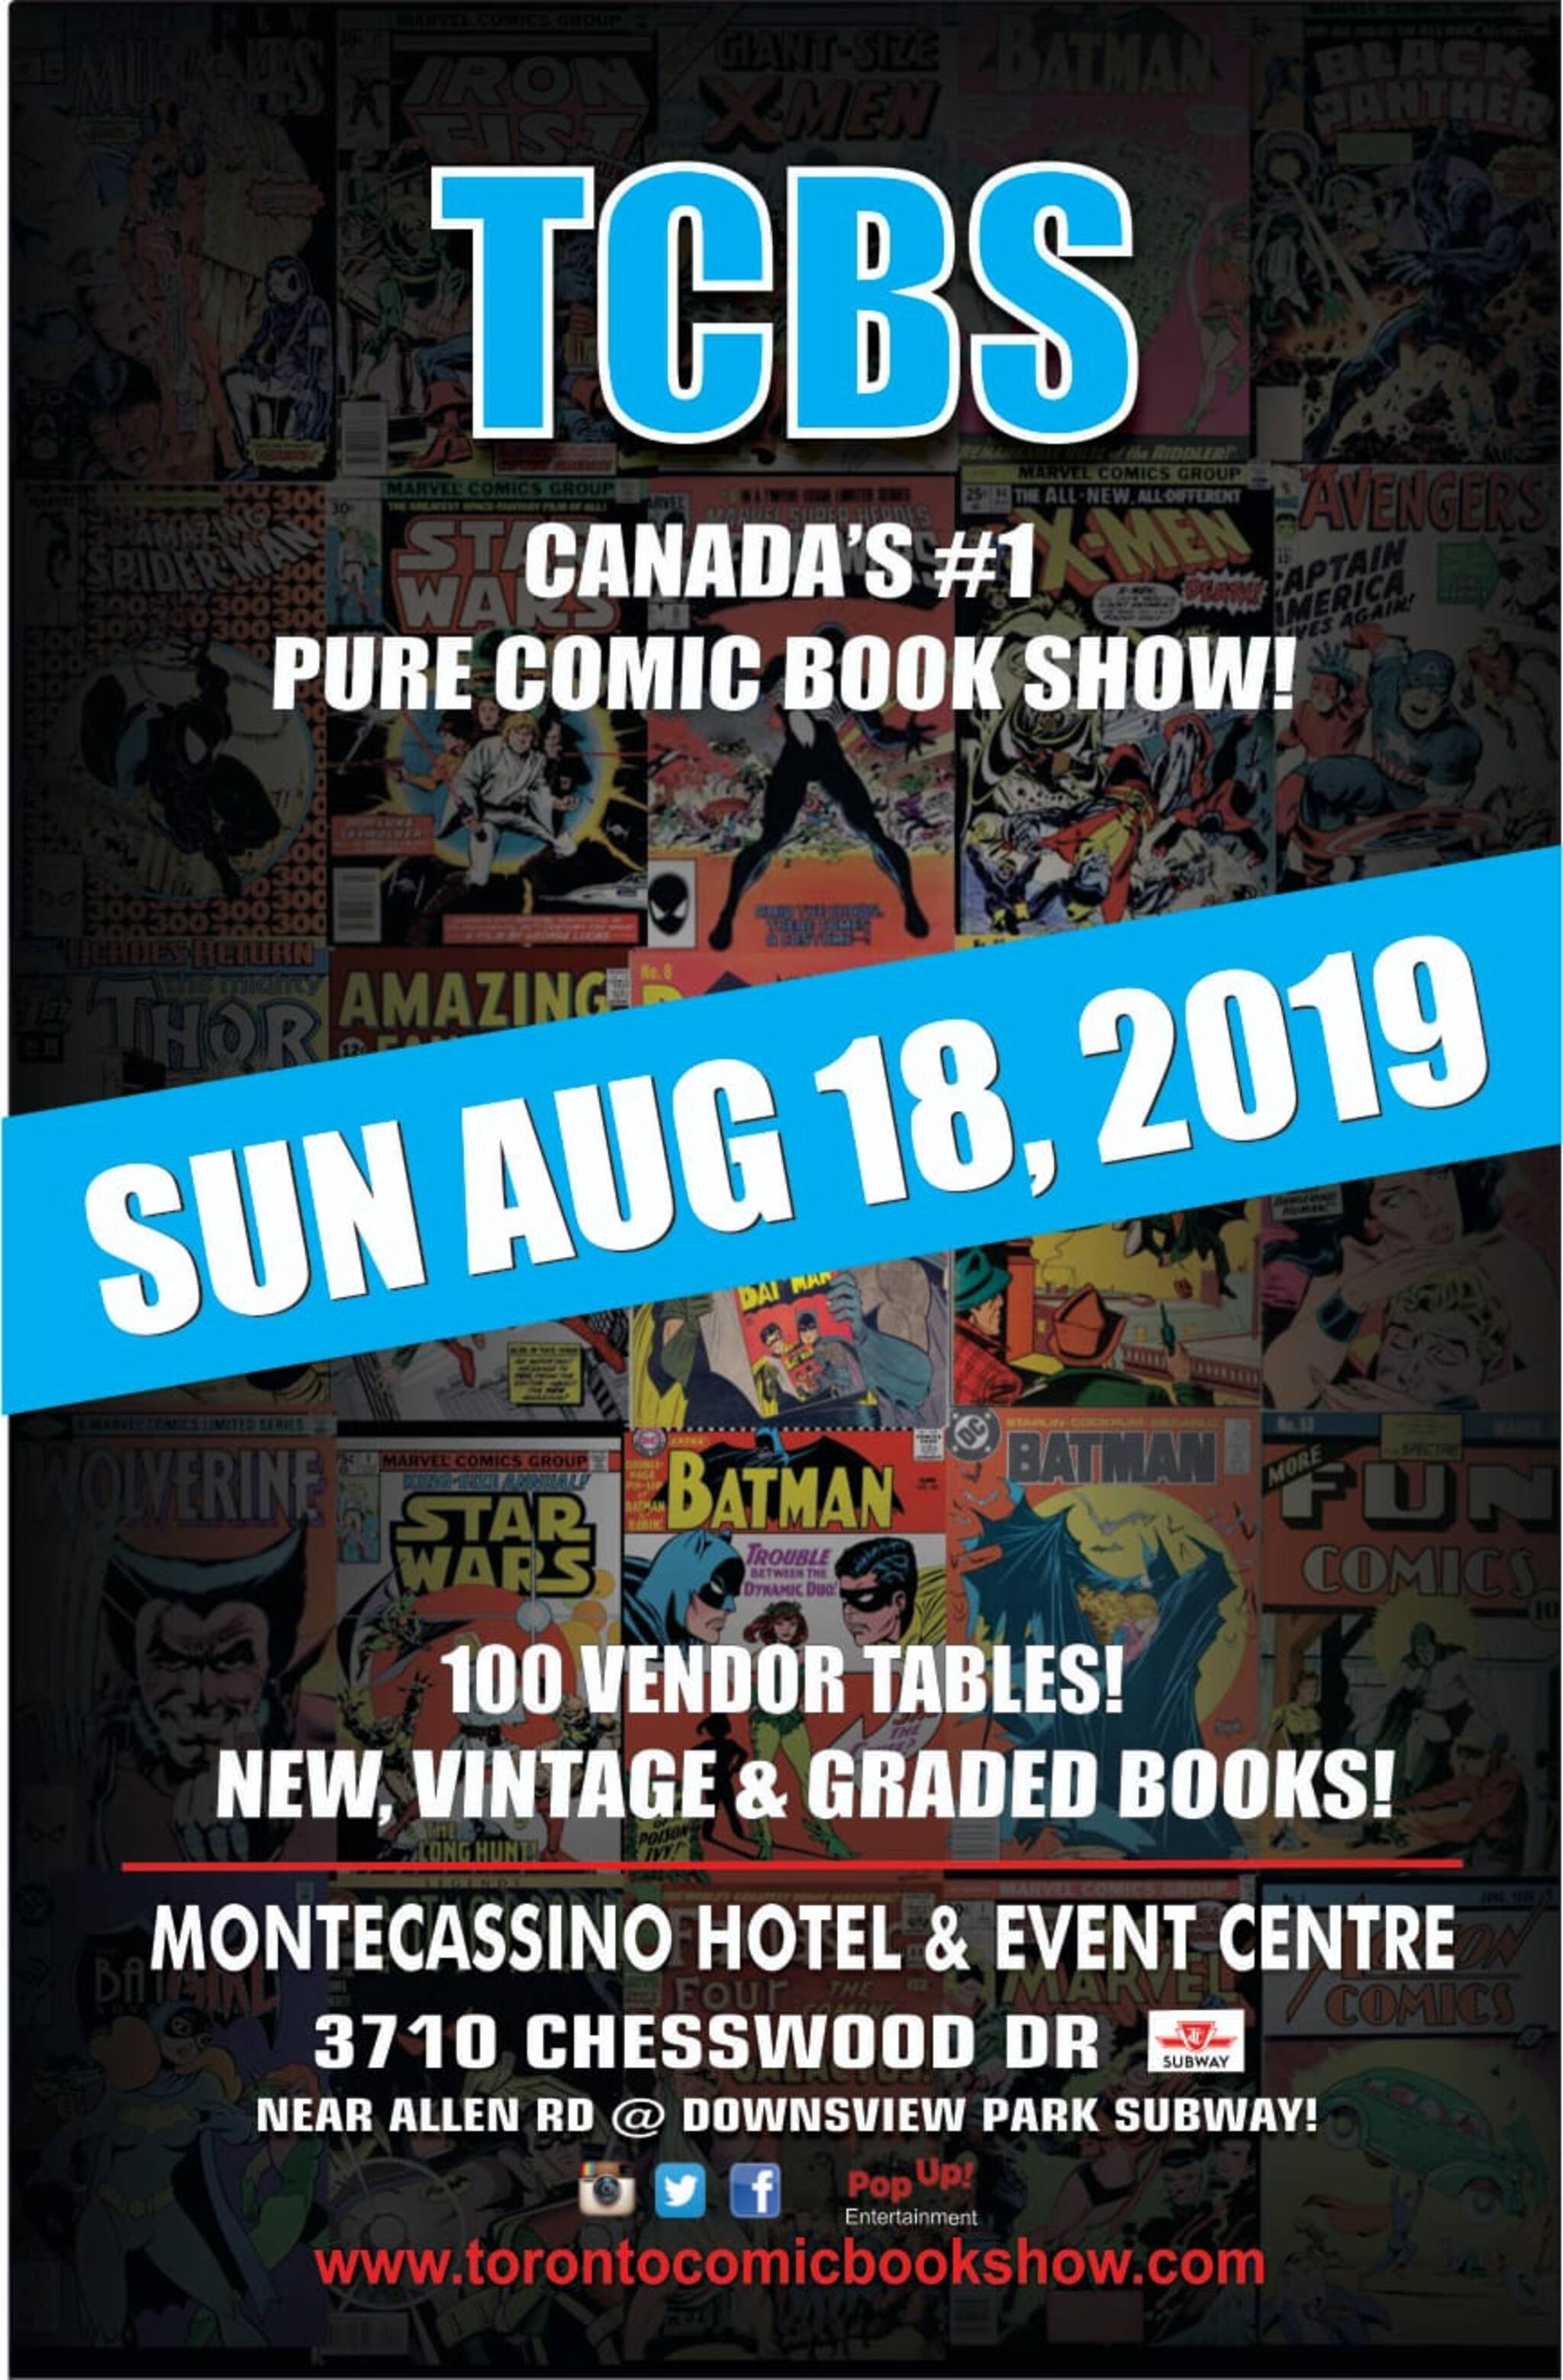 TCBS Toronto Comic Book Show